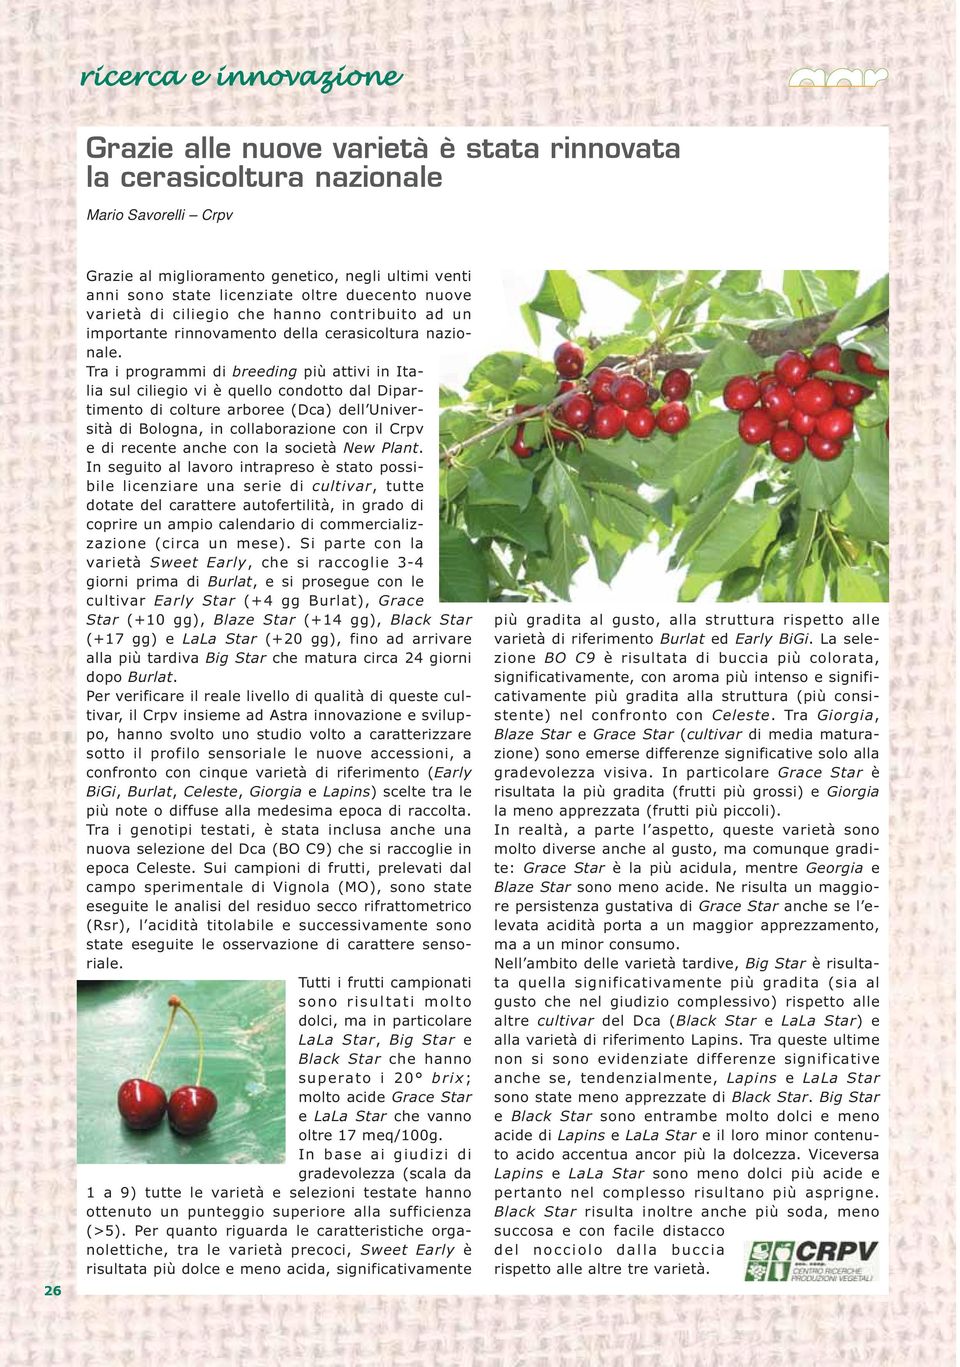 Tra i programmi di breeding più attivi in Italia sul ciliegio vi è quello condotto dal Dipartimento di colture arboree (Dca) dell Università di Bologna, in collaborazione con il Crpv e di recente